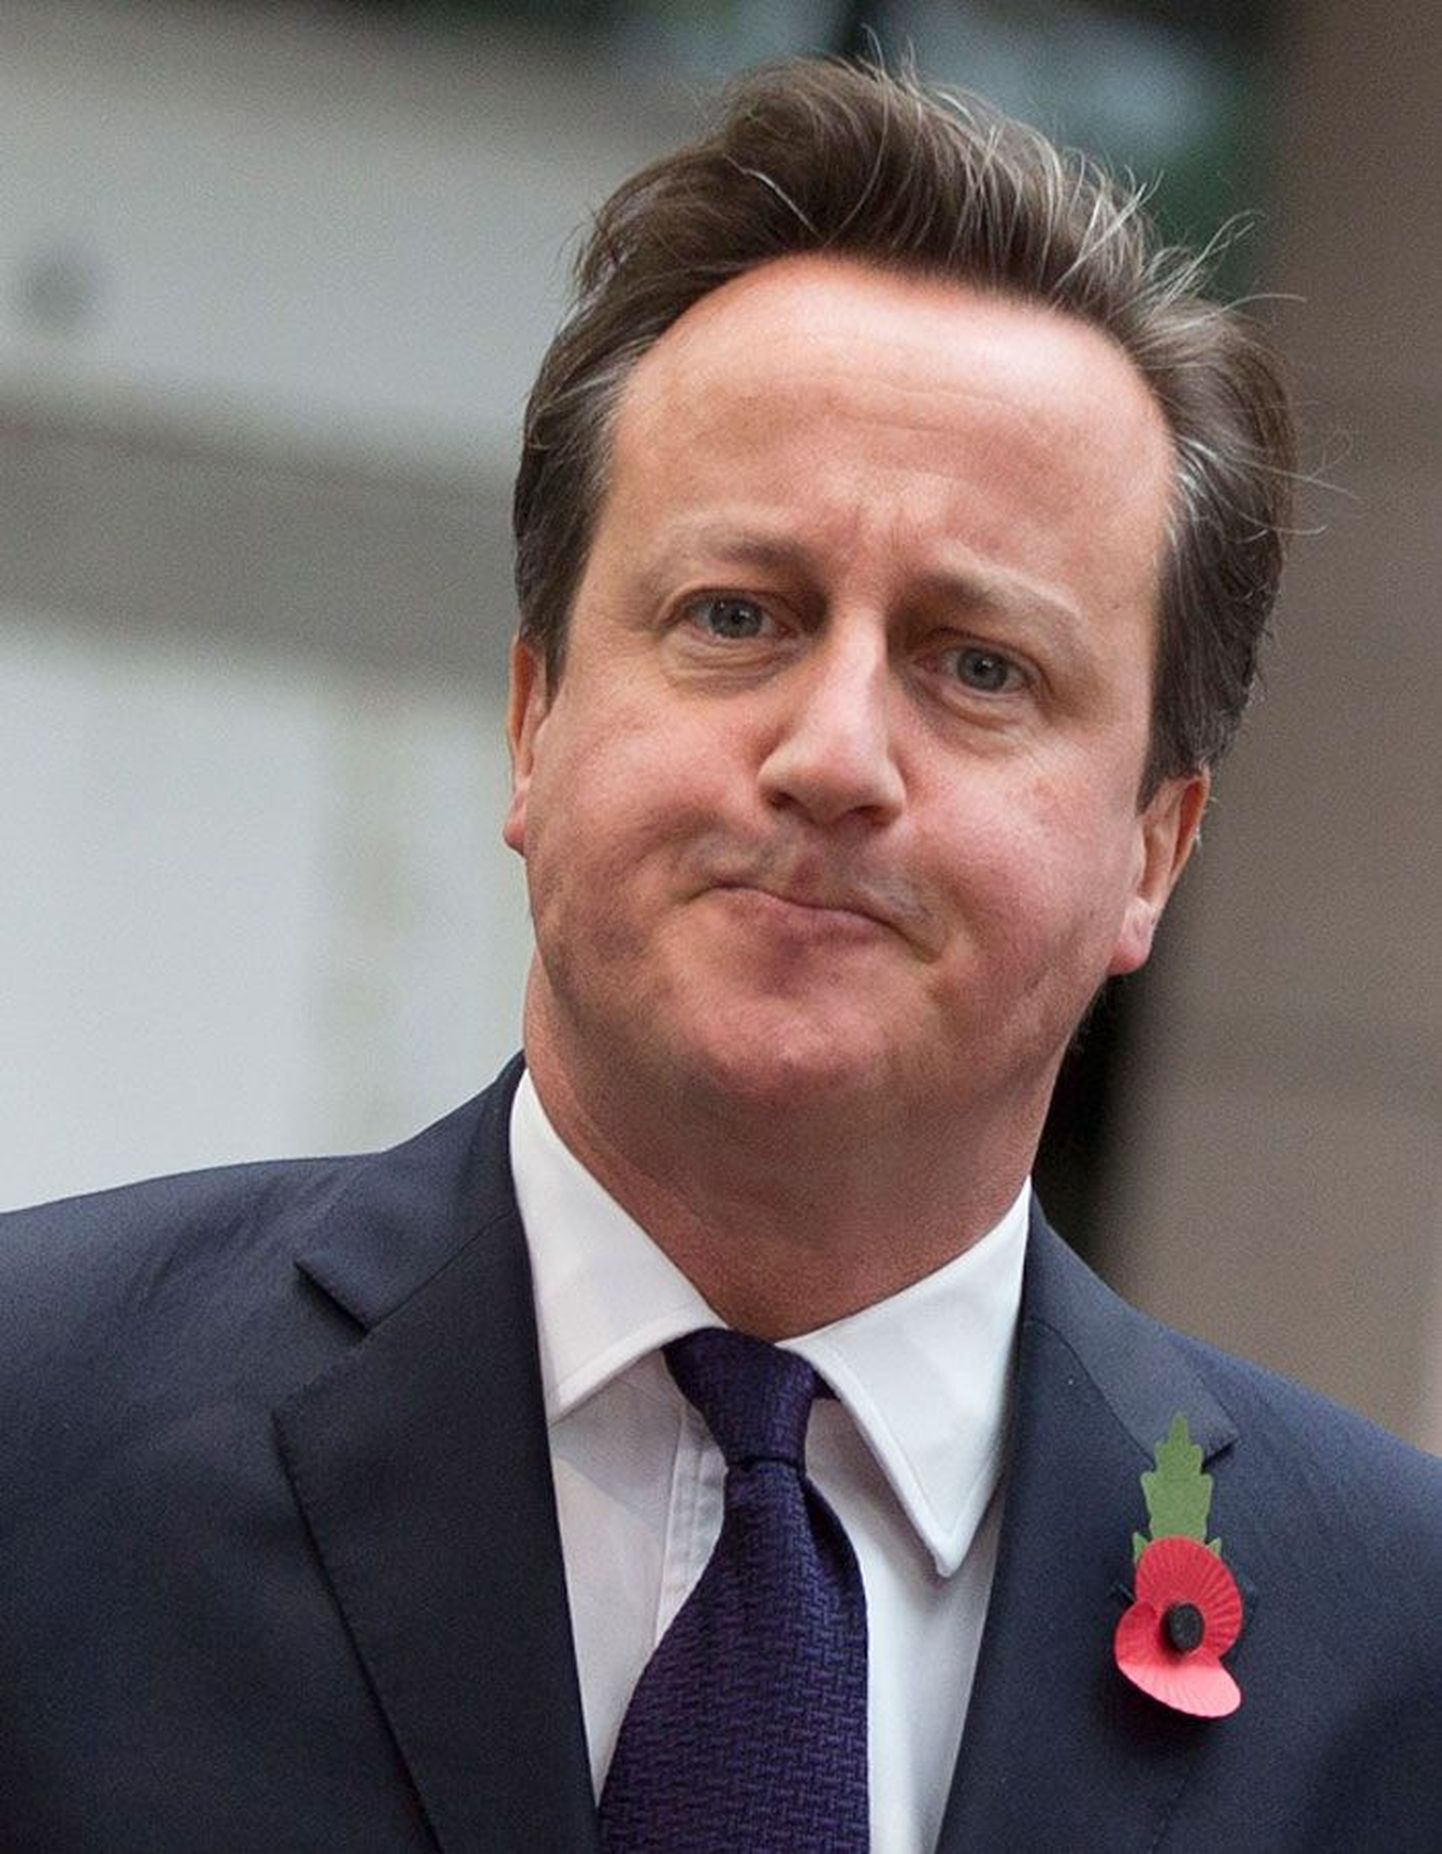 Своей жесткой позицией по вопросу иммиграции Дэвид Кэмерон намерен привлечь голоса избирателей.